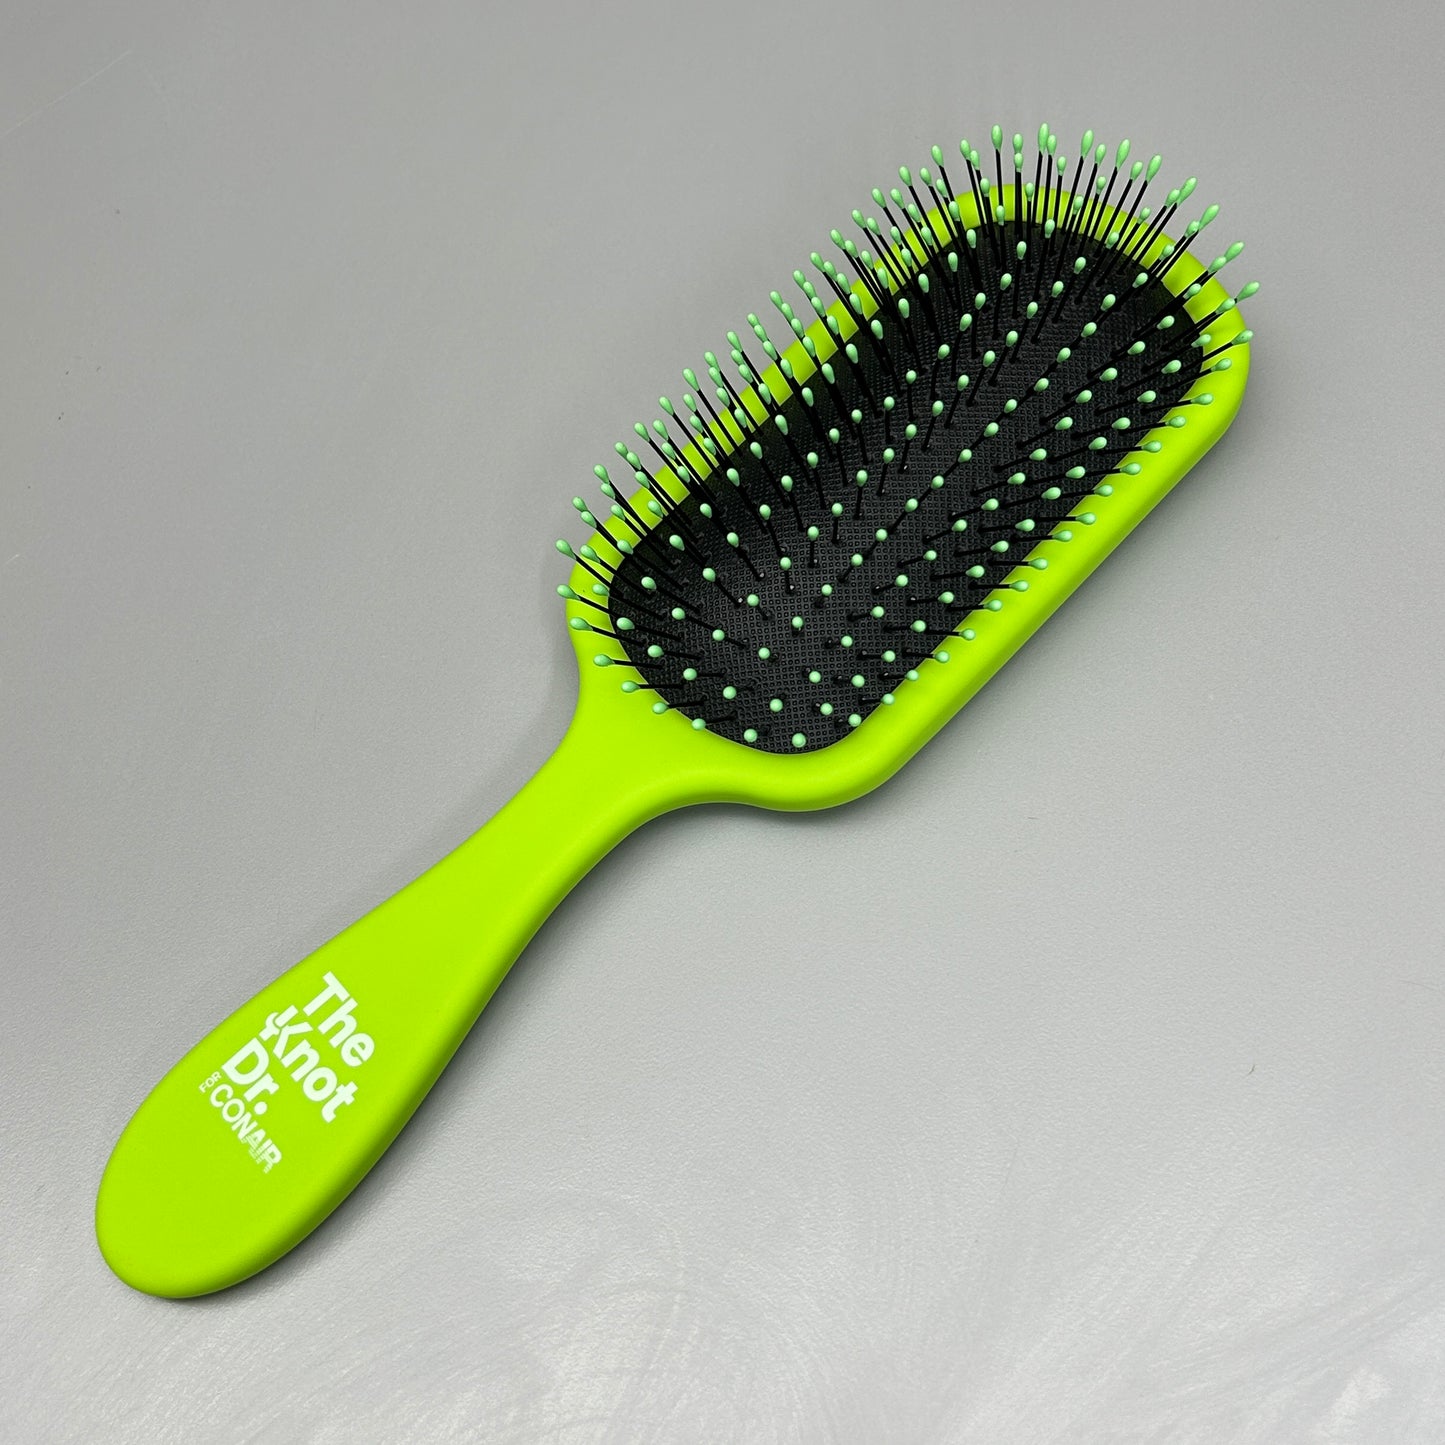 CONAIR 2-PACK! The Knot Dr. Wet and Dry Detangler Hair Brush Green (New)